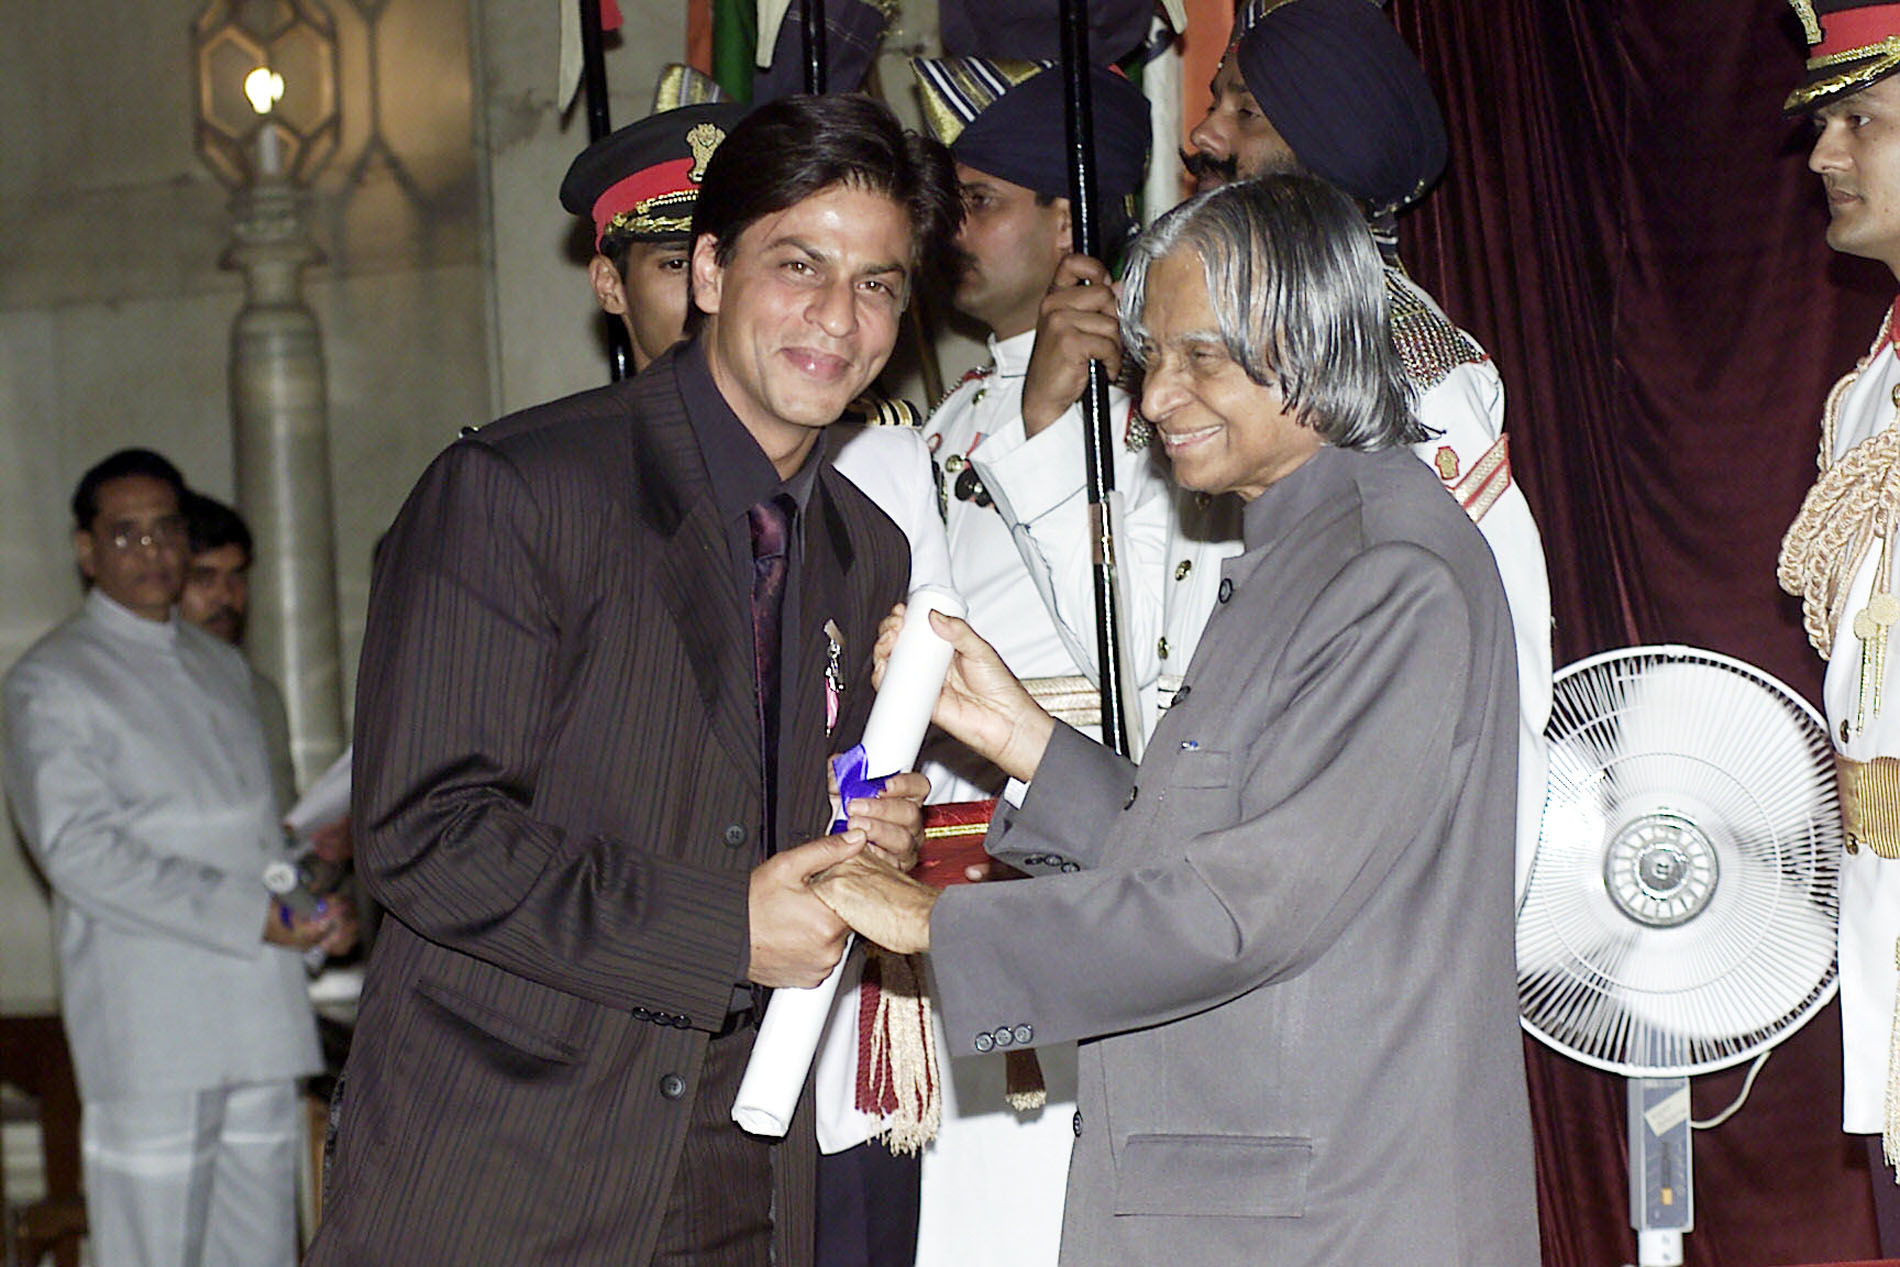 Shah Rukh Khan won Padma Shri Award